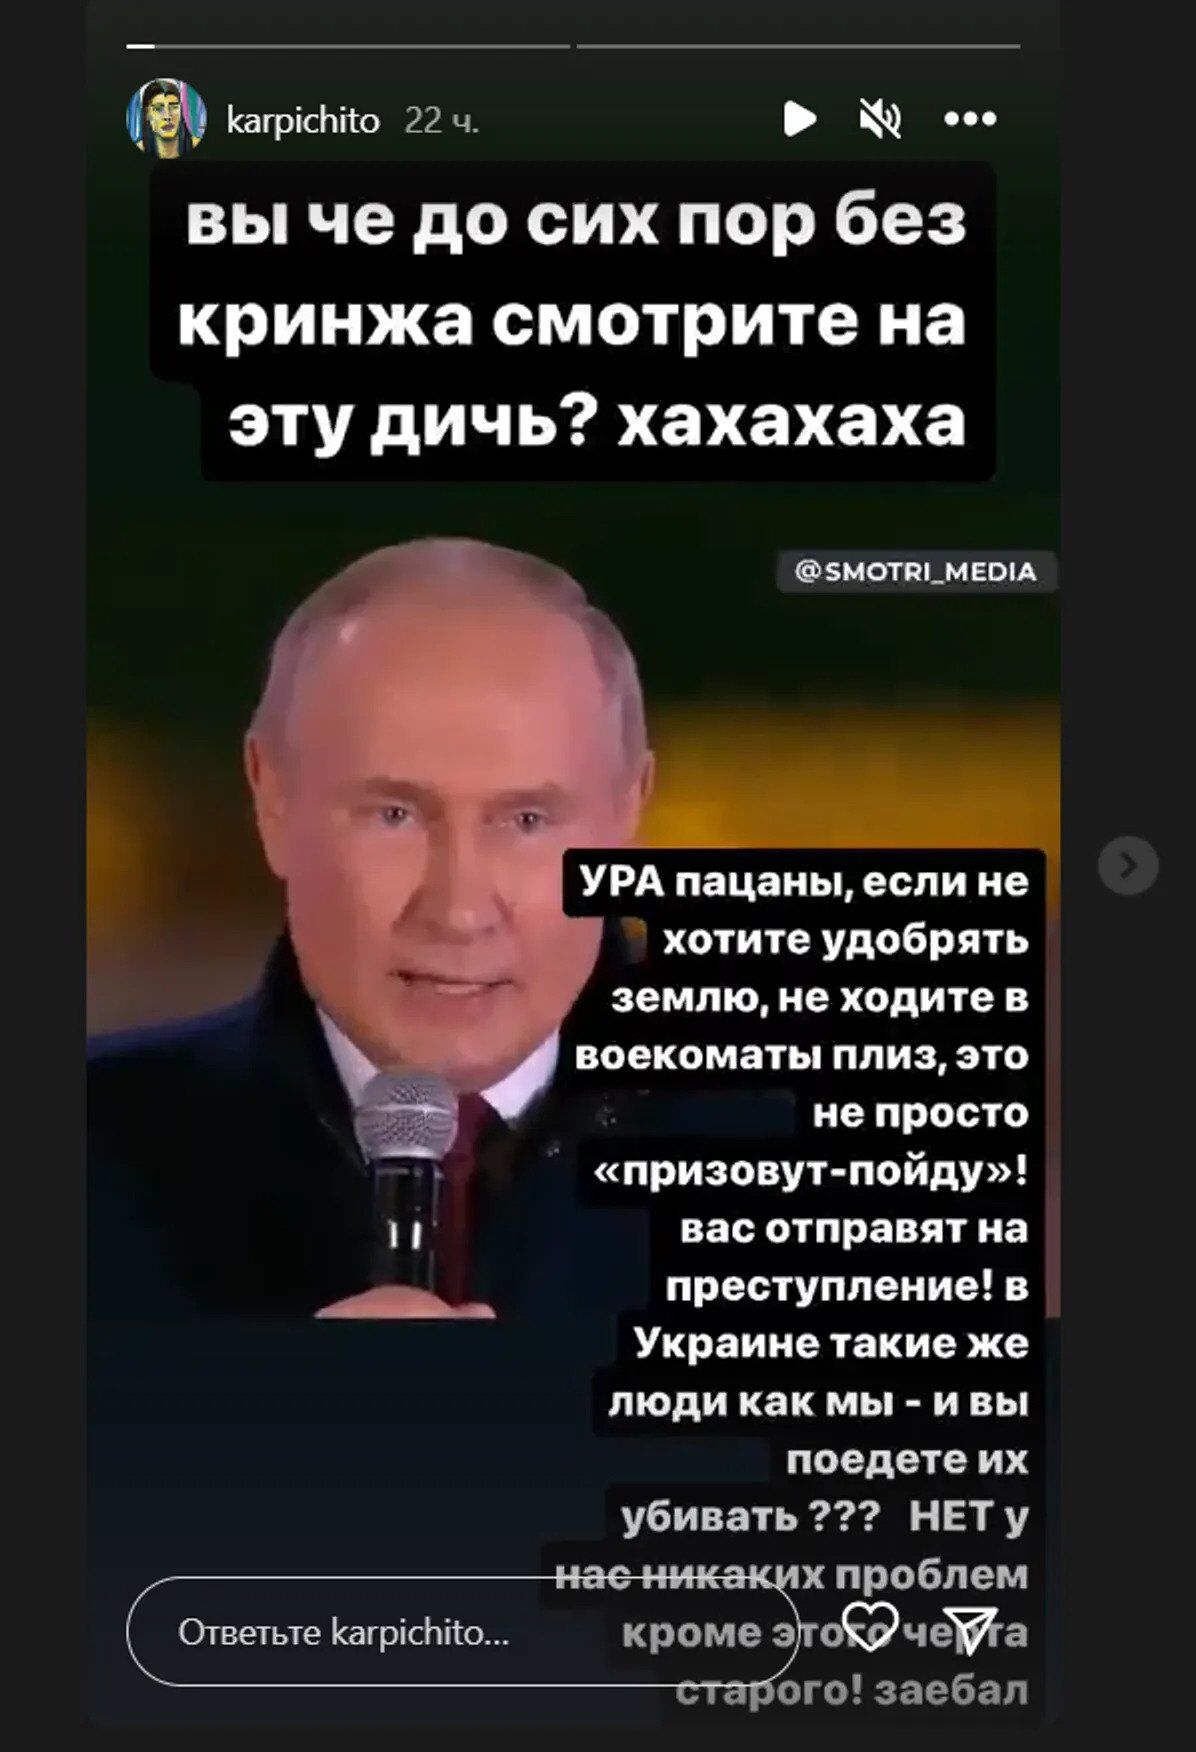 Футболистка сборной России назвала Путина "проблемой, которая всех за*бала"